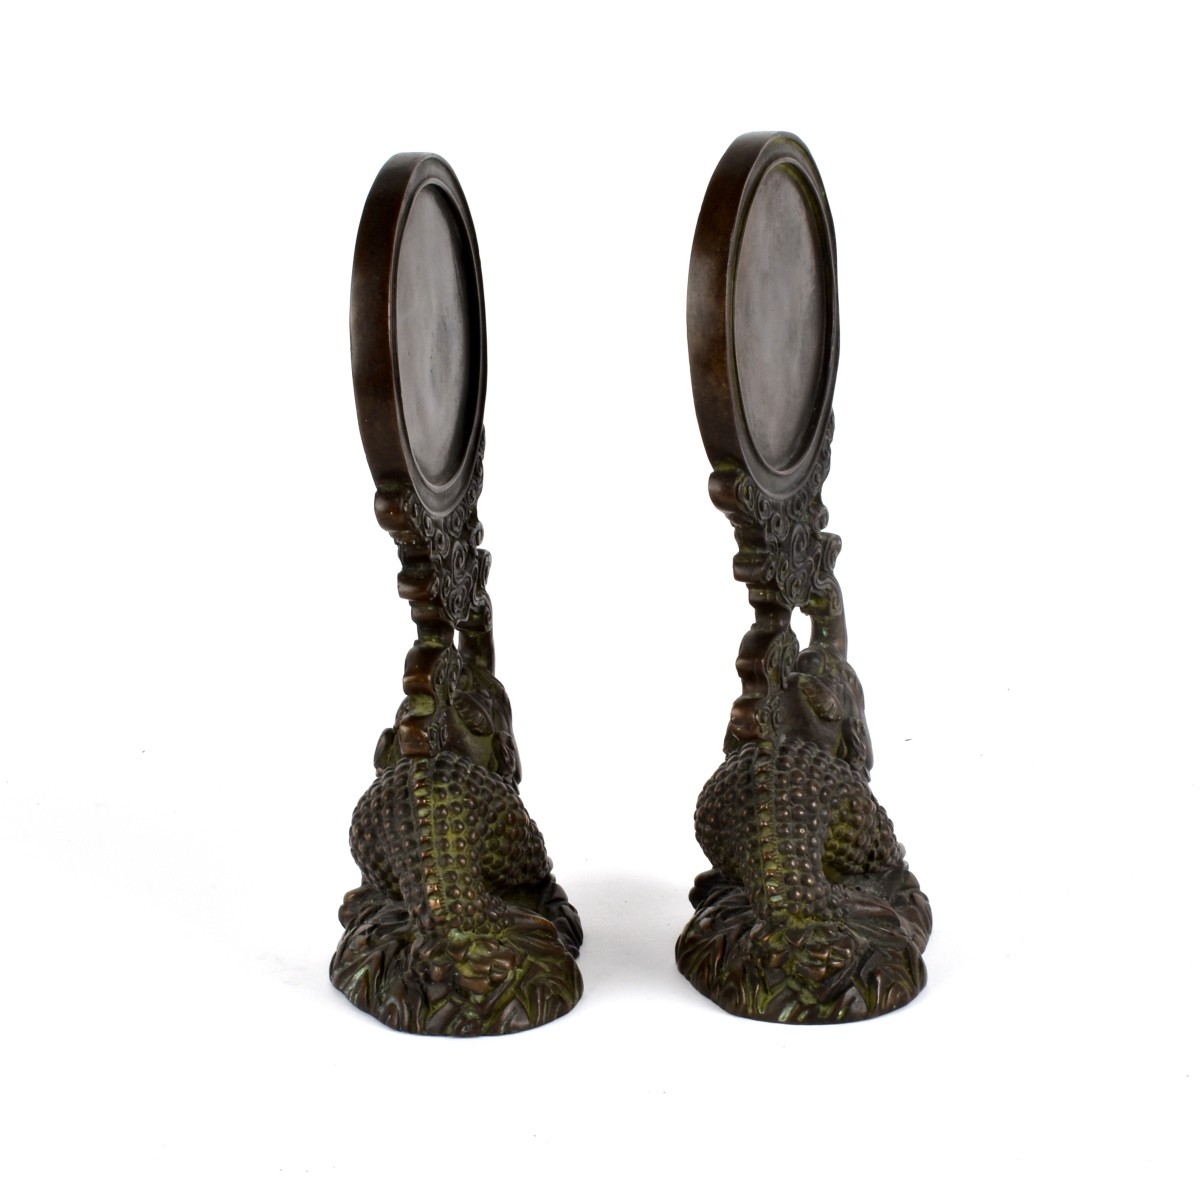 Pair of Chinese Bronze Mirrors